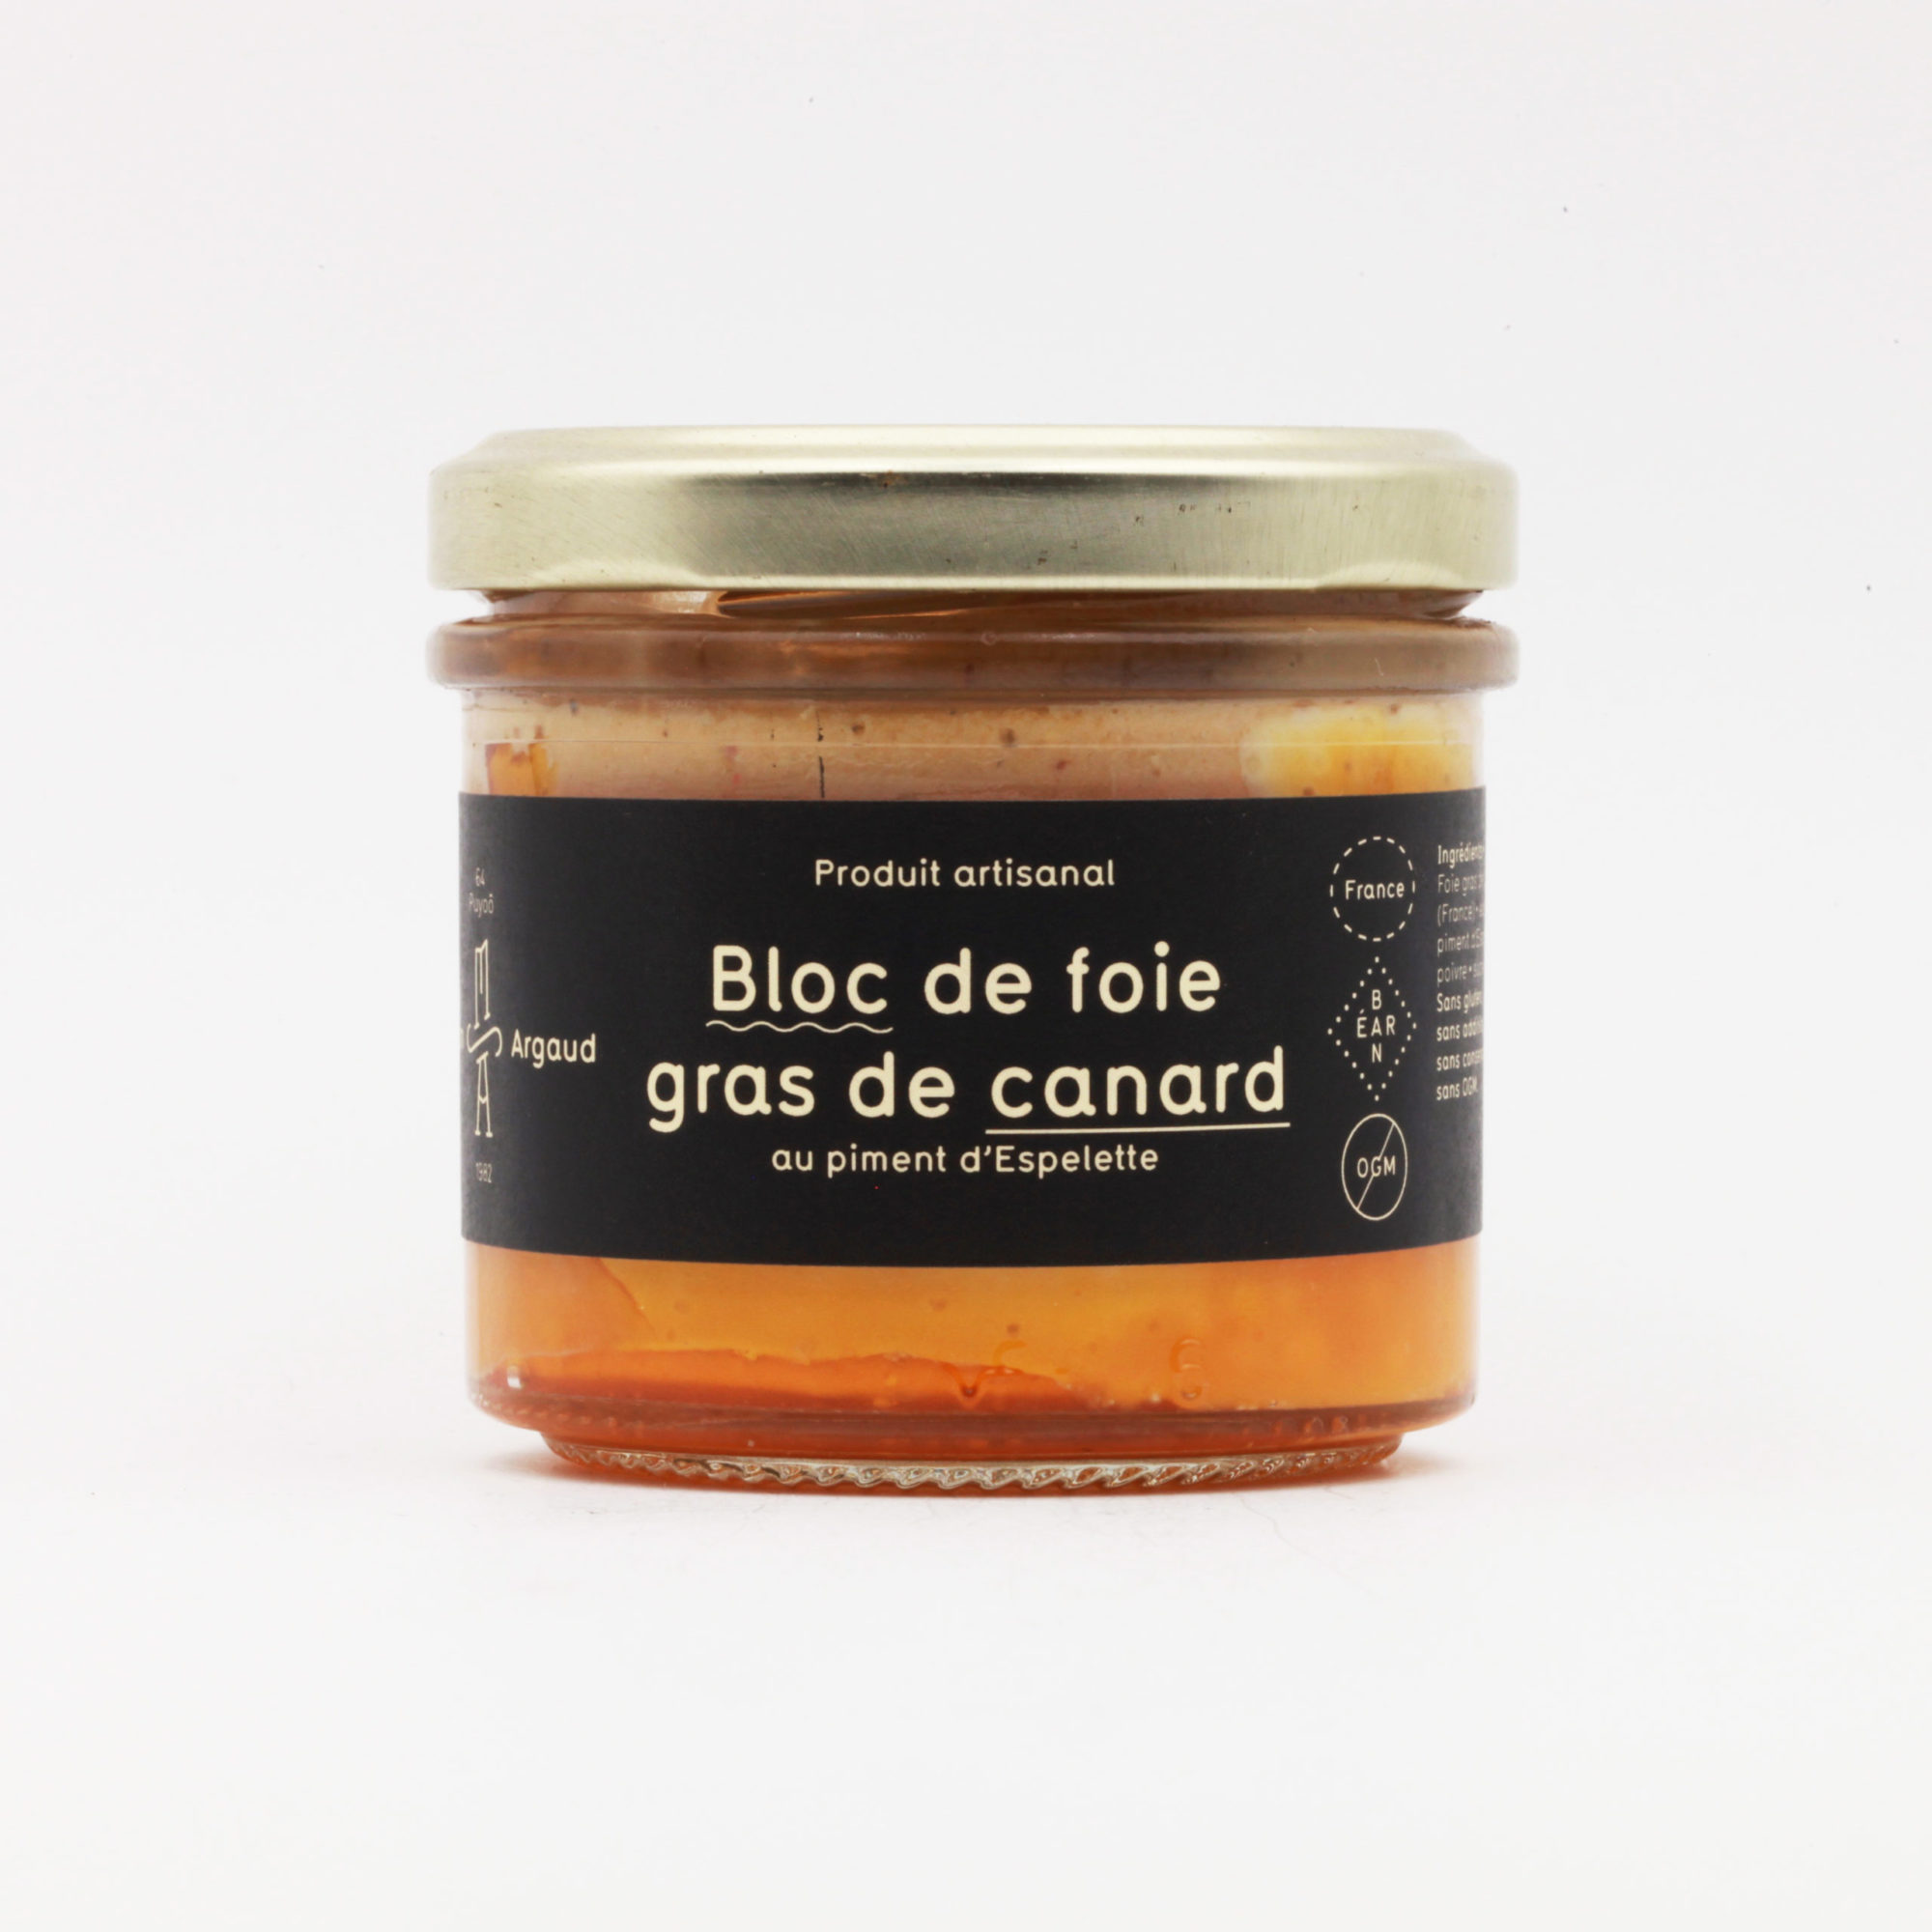 Bloc de foie gras de canard au piment d'Espelette